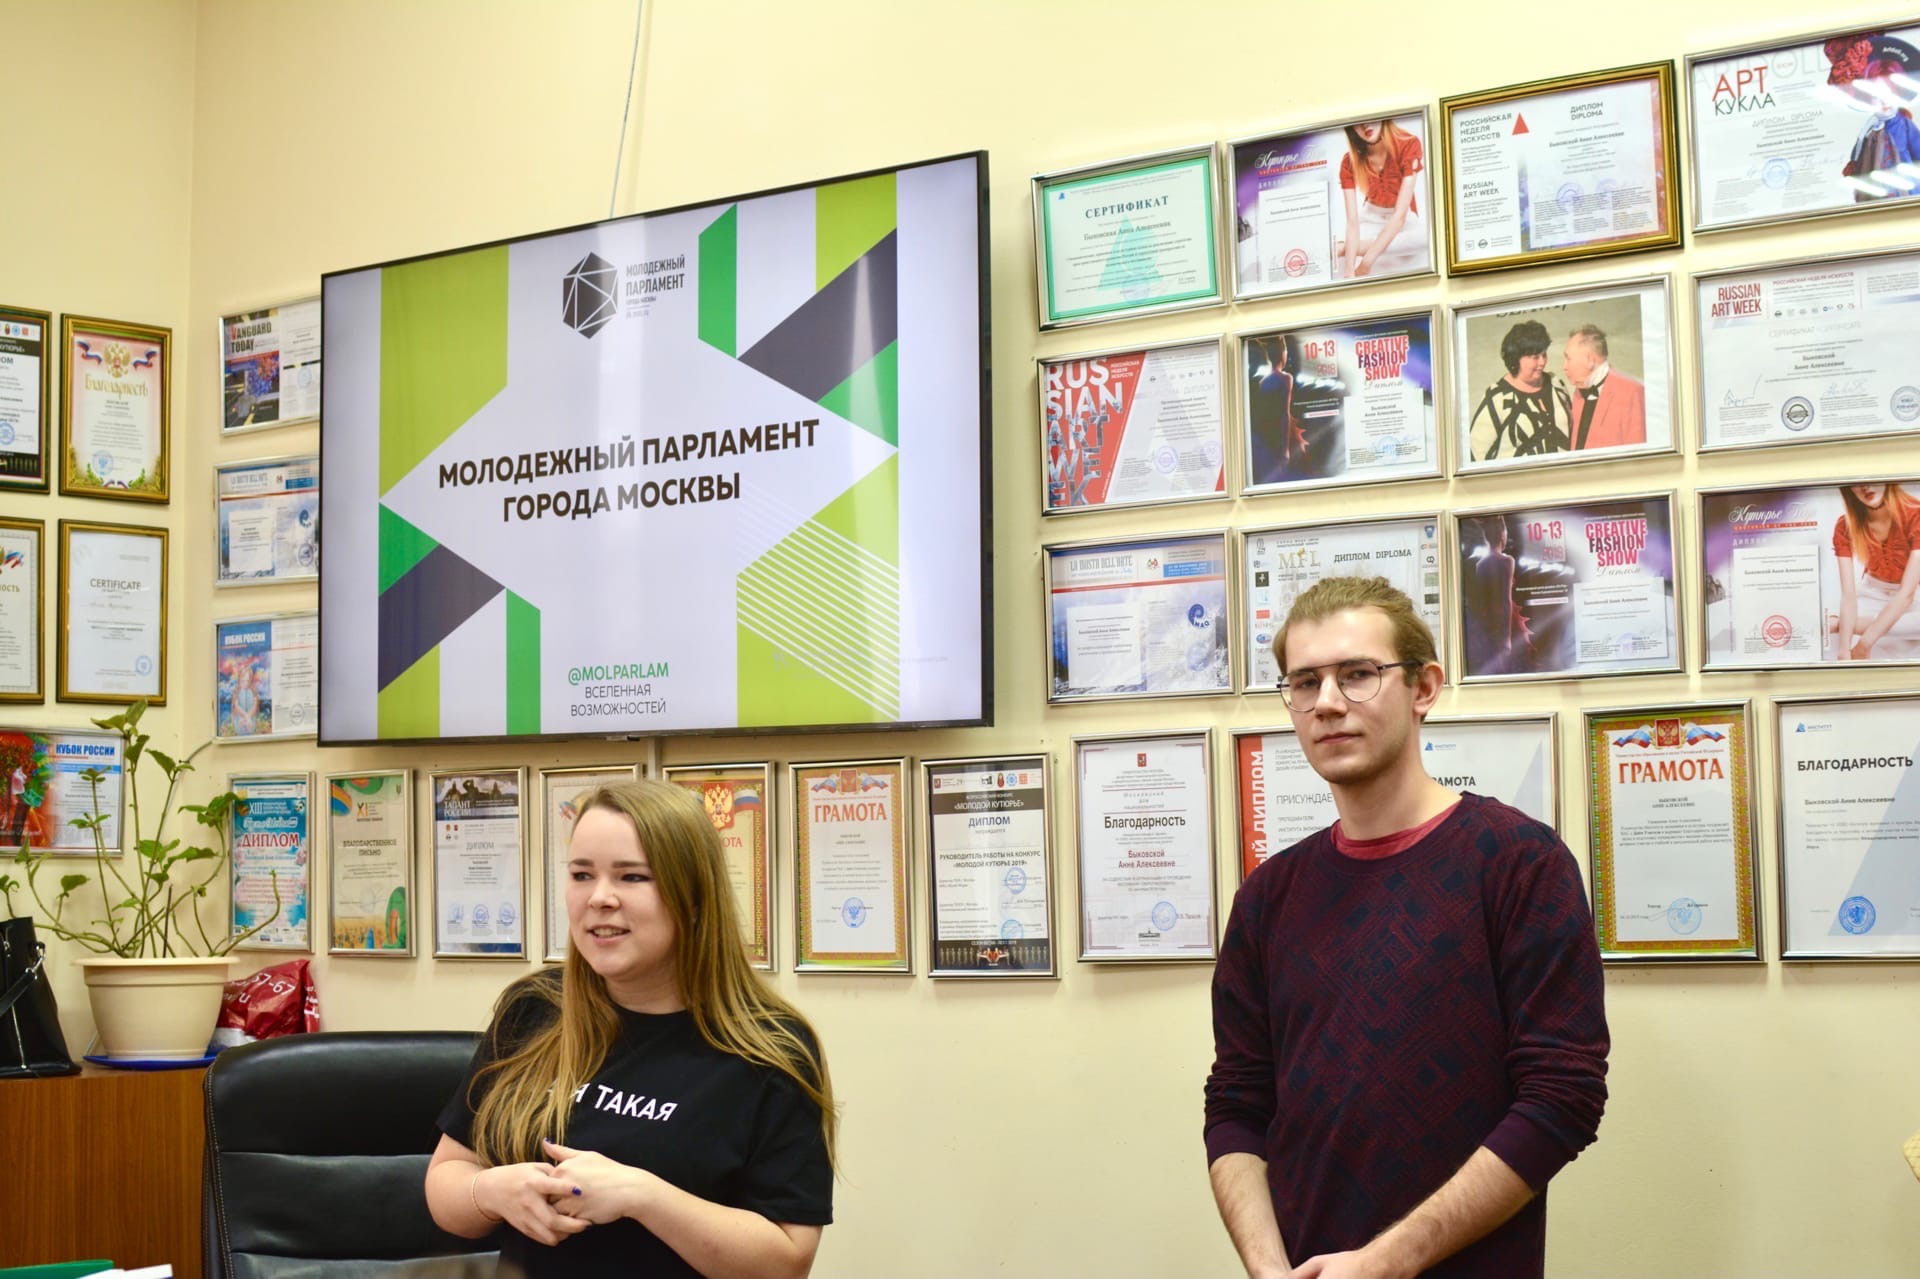 Состоялась встреча студентов и преподавателей ИЭиК с участниками молодежного парламента Восточного административного округа г. Москвы